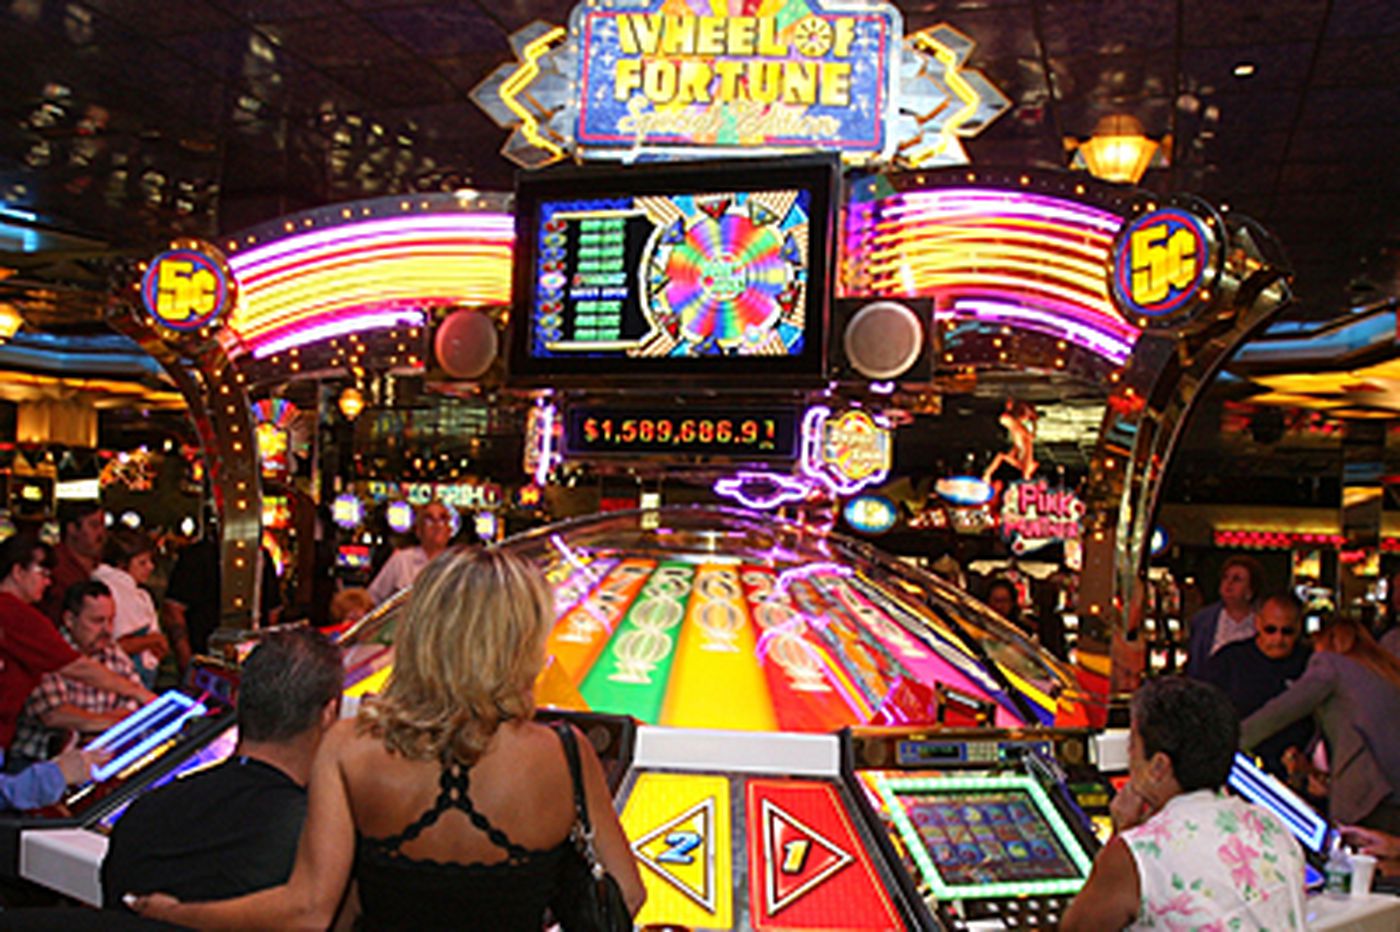 will atlantic city casinos close again